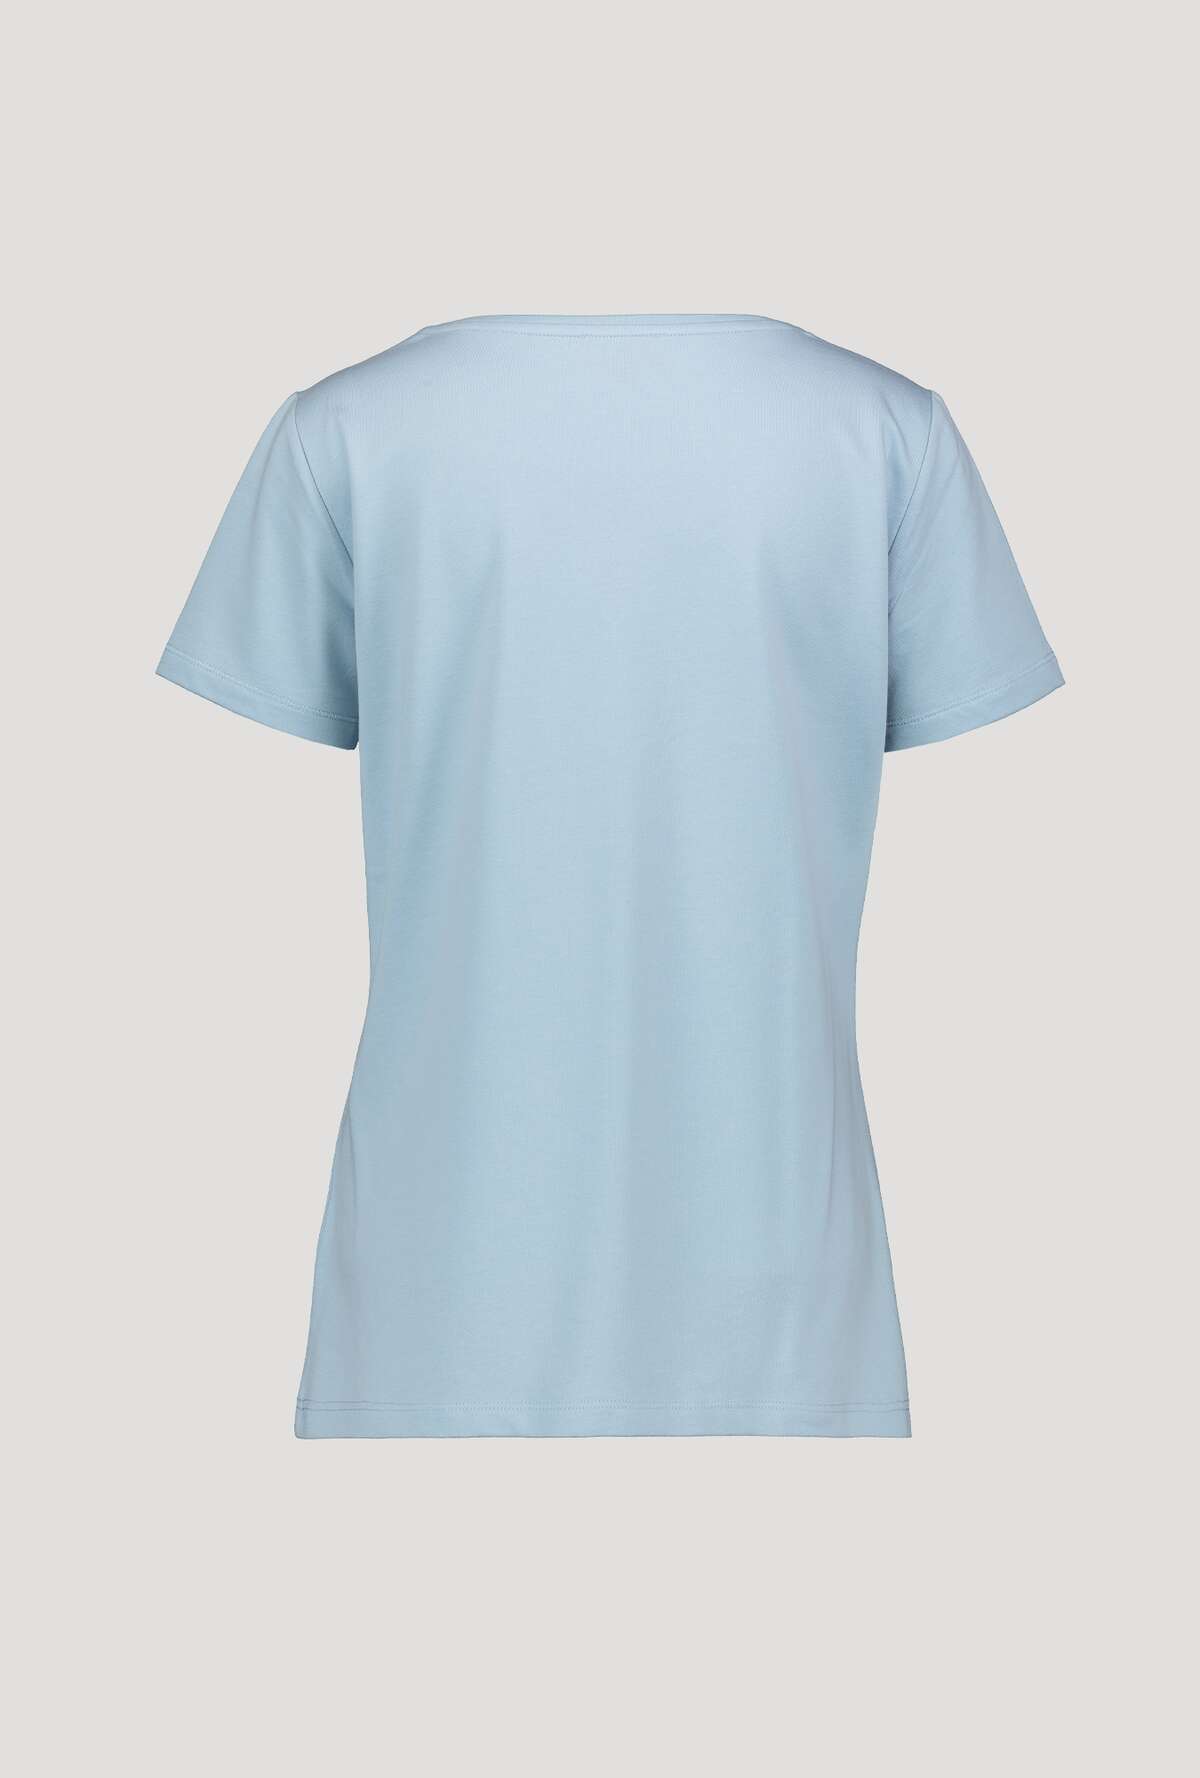 Monari T-Shirt 405920